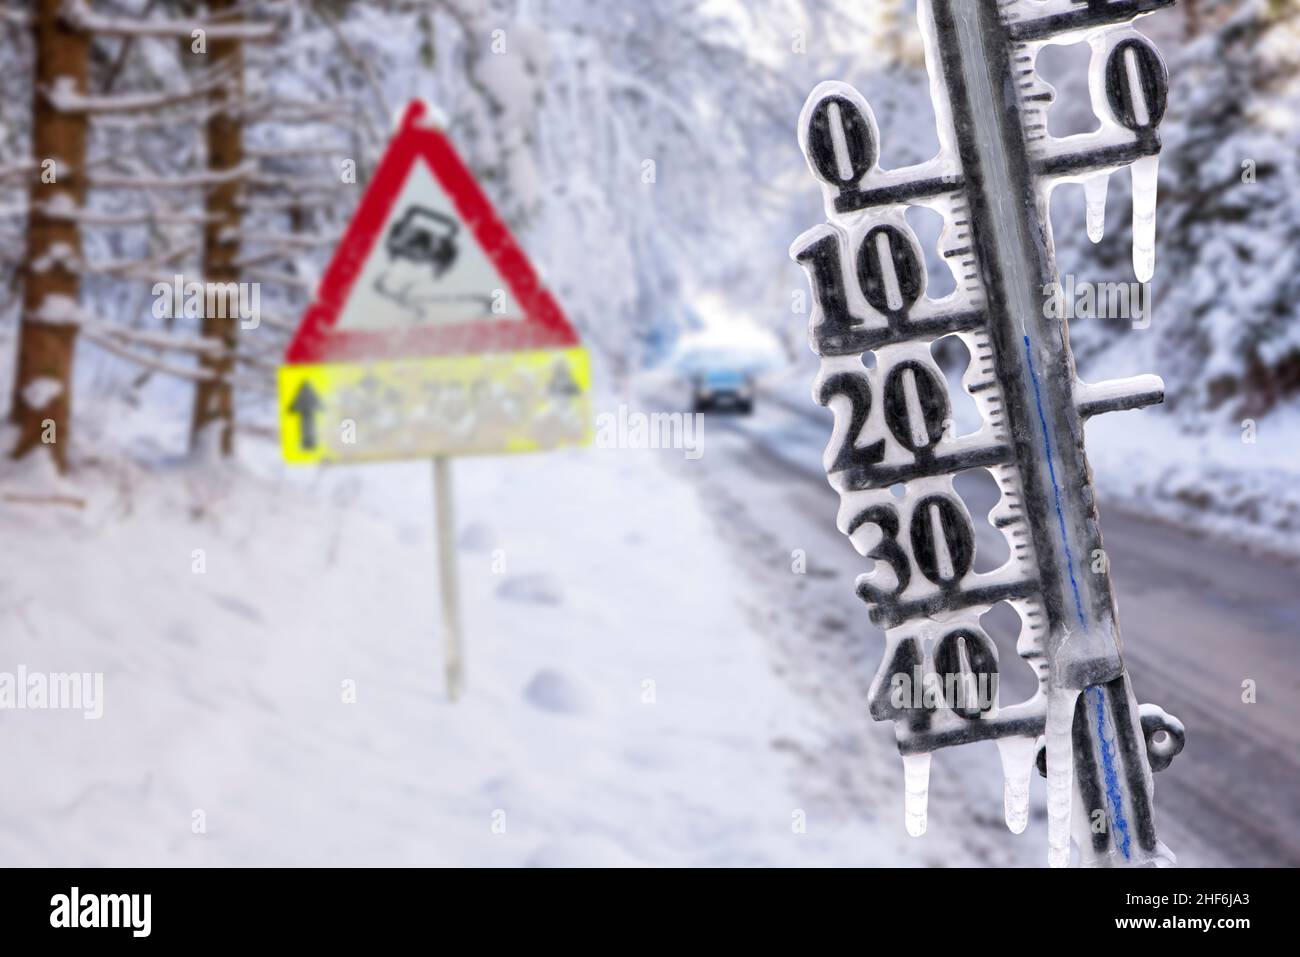 El termómetro muestra la temperatura fría y los icículos en invierno con el camino resbaladizo Foto de stock